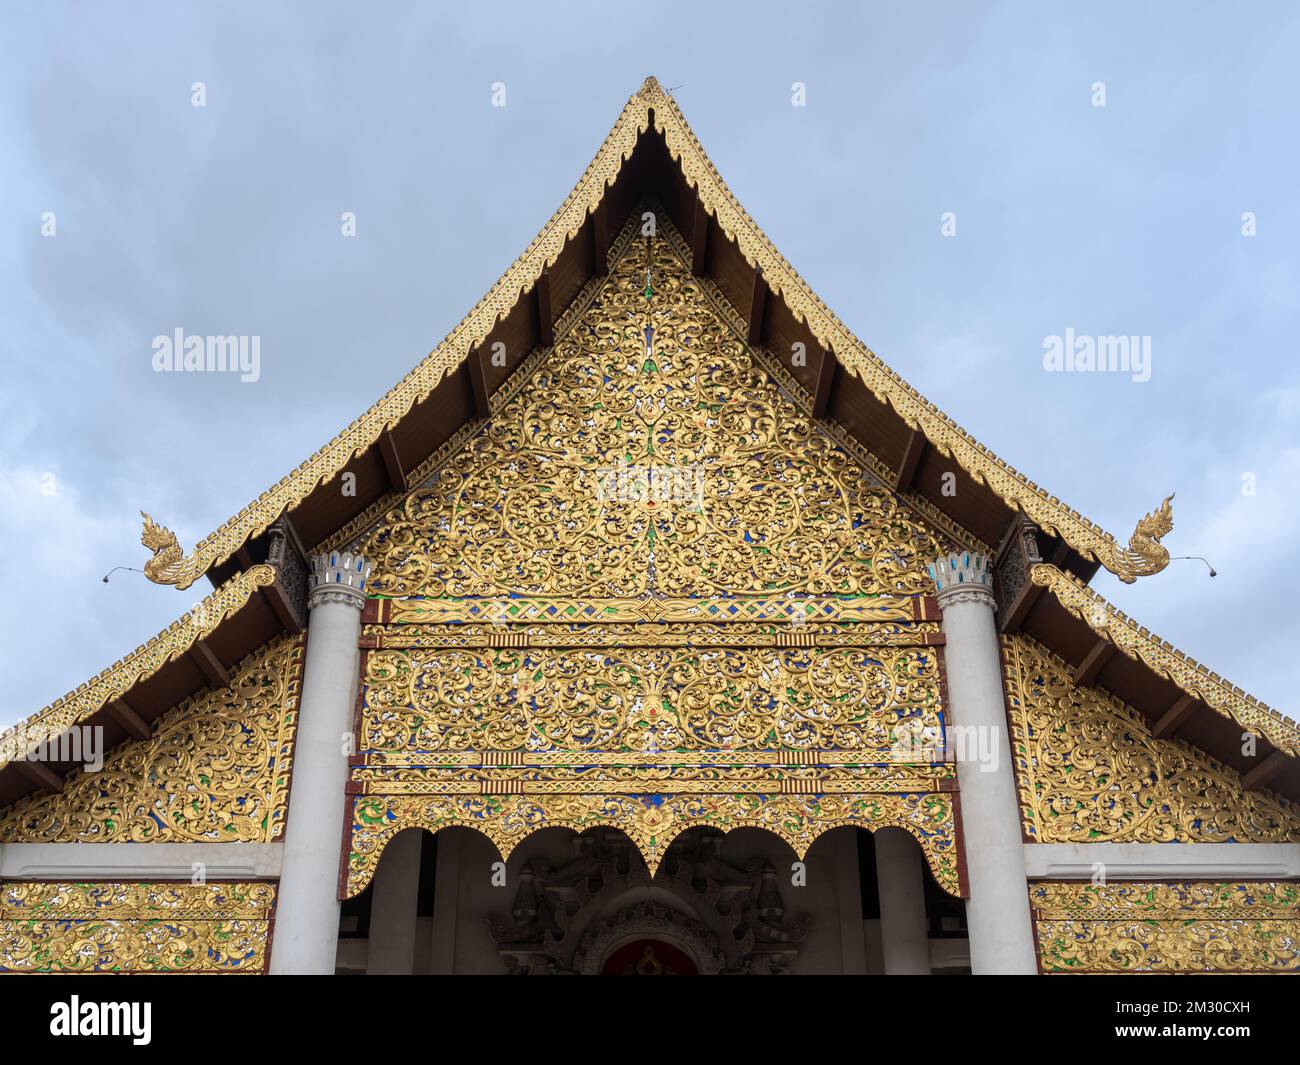 Sculpture complexe en bois doré sur un pignon de vihara ou de viharn au temple bouddhiste de Wat Chedi Luang, Chiang Mai, Thaïlande Banque D'Images